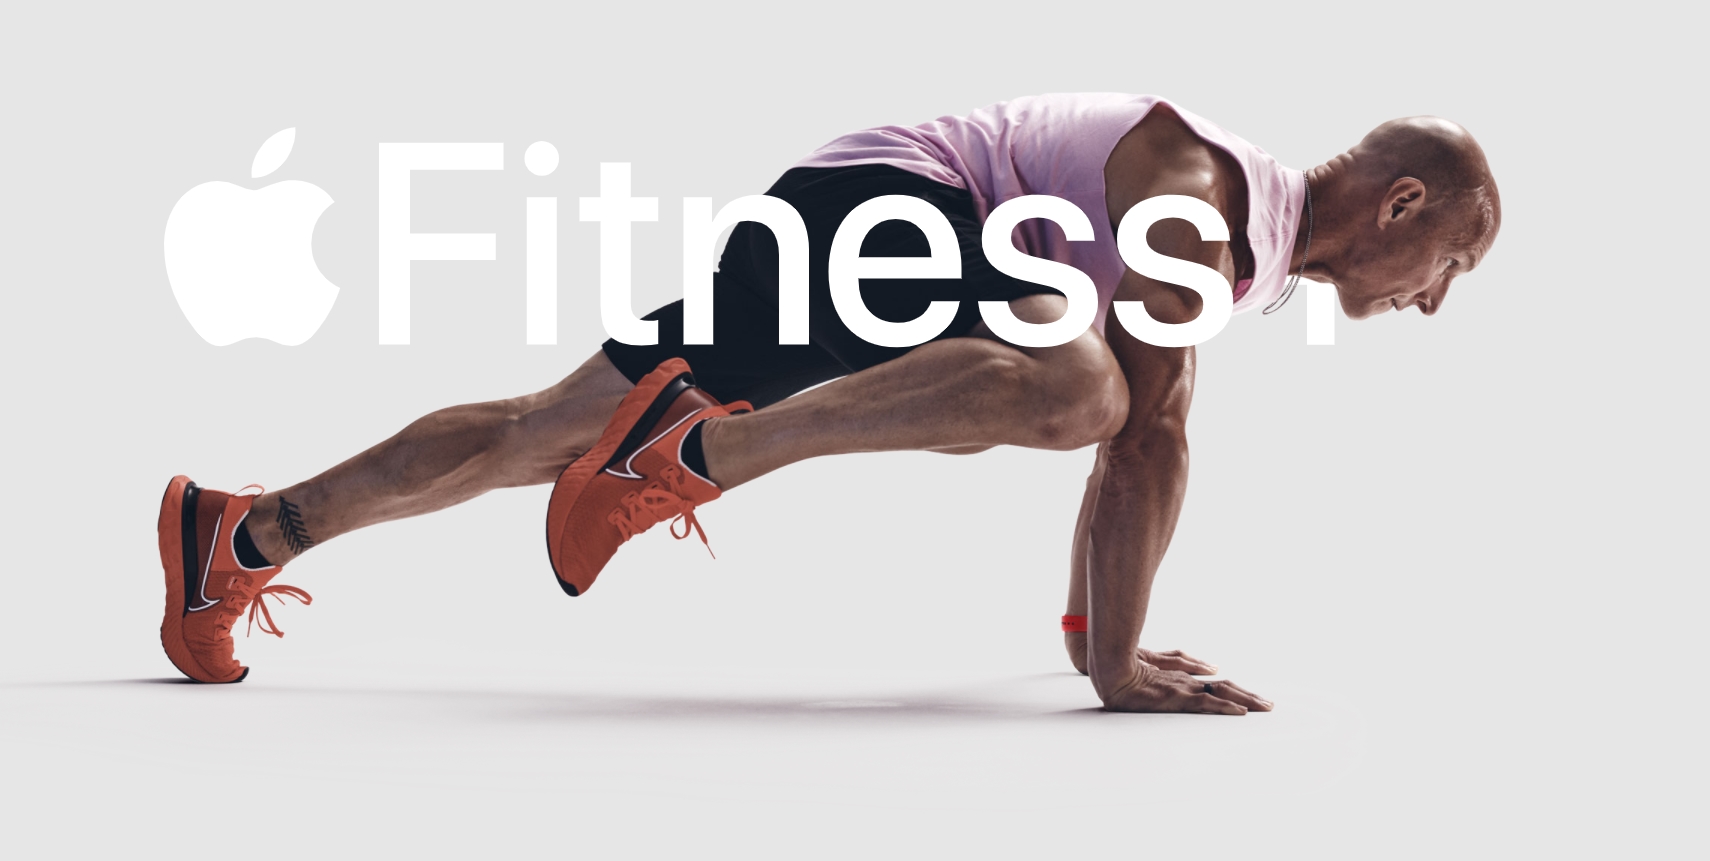 Apple Fitness+ chính thức được triển khai từ tuần tới